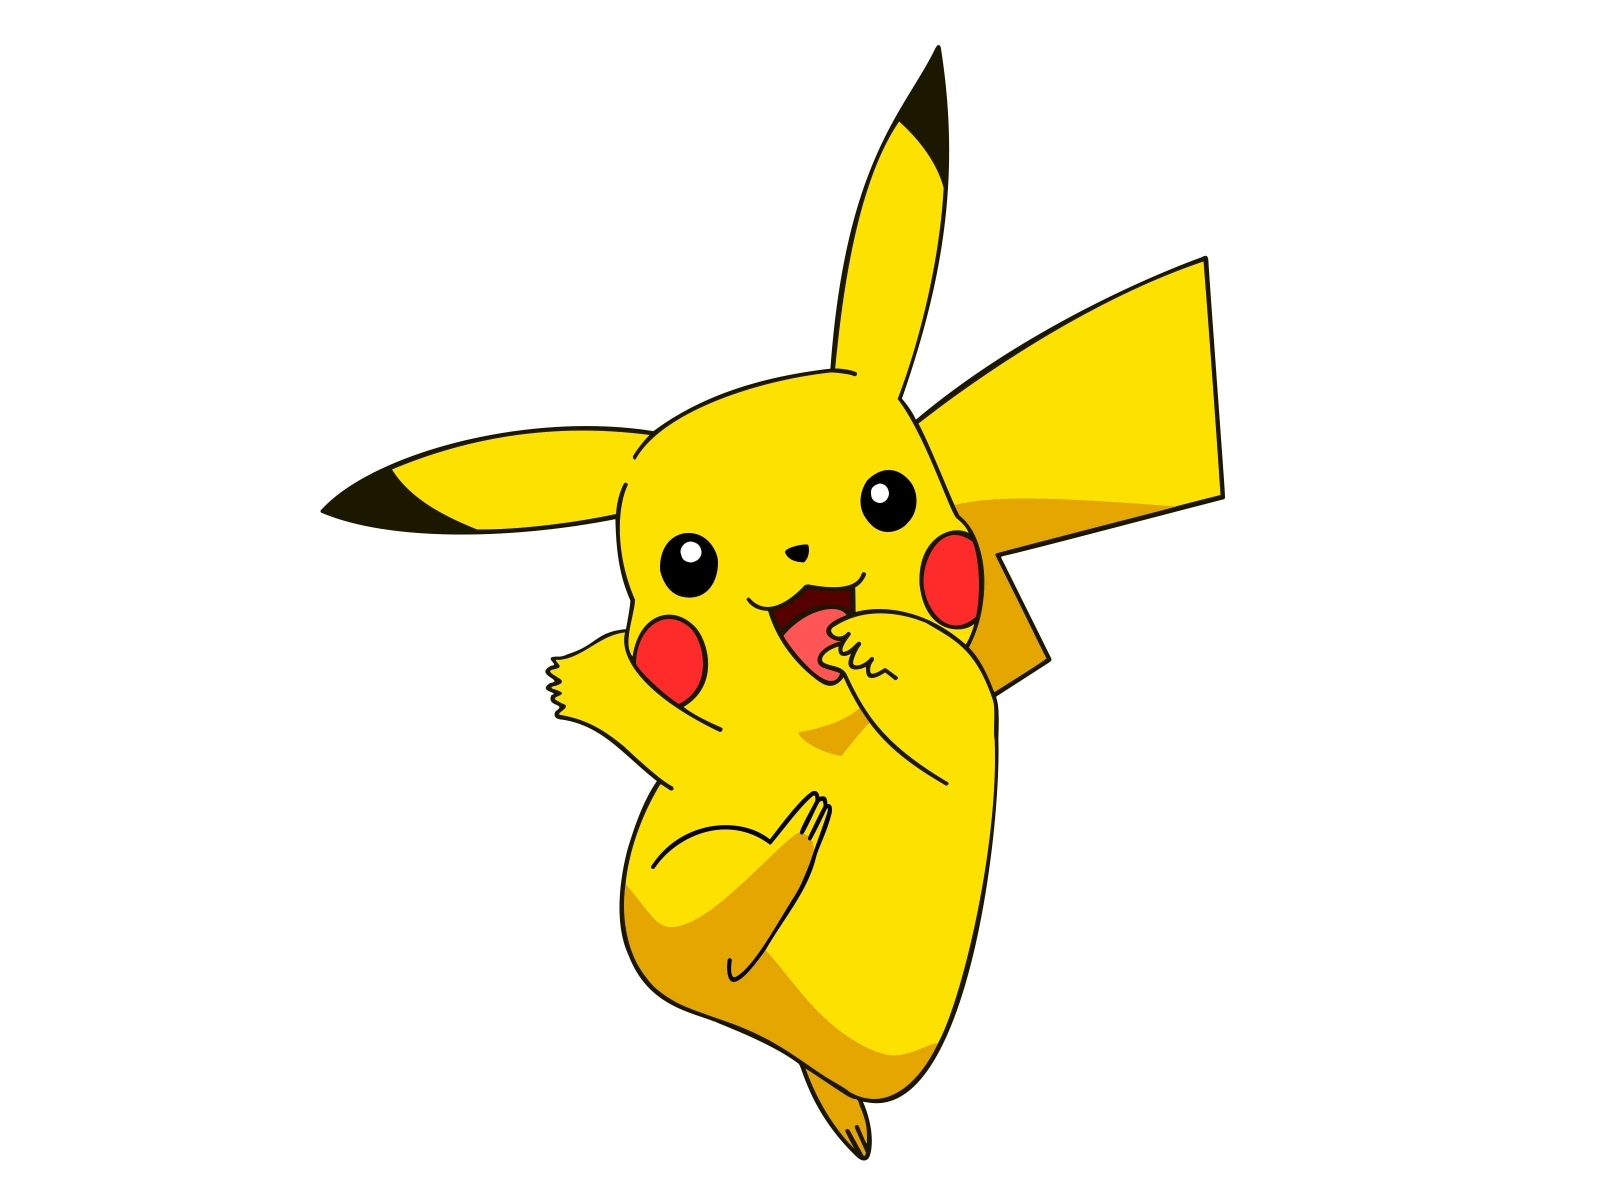 Pokemon Cartoon Character | Pikachu by Kazi Ashraful on Dribbble